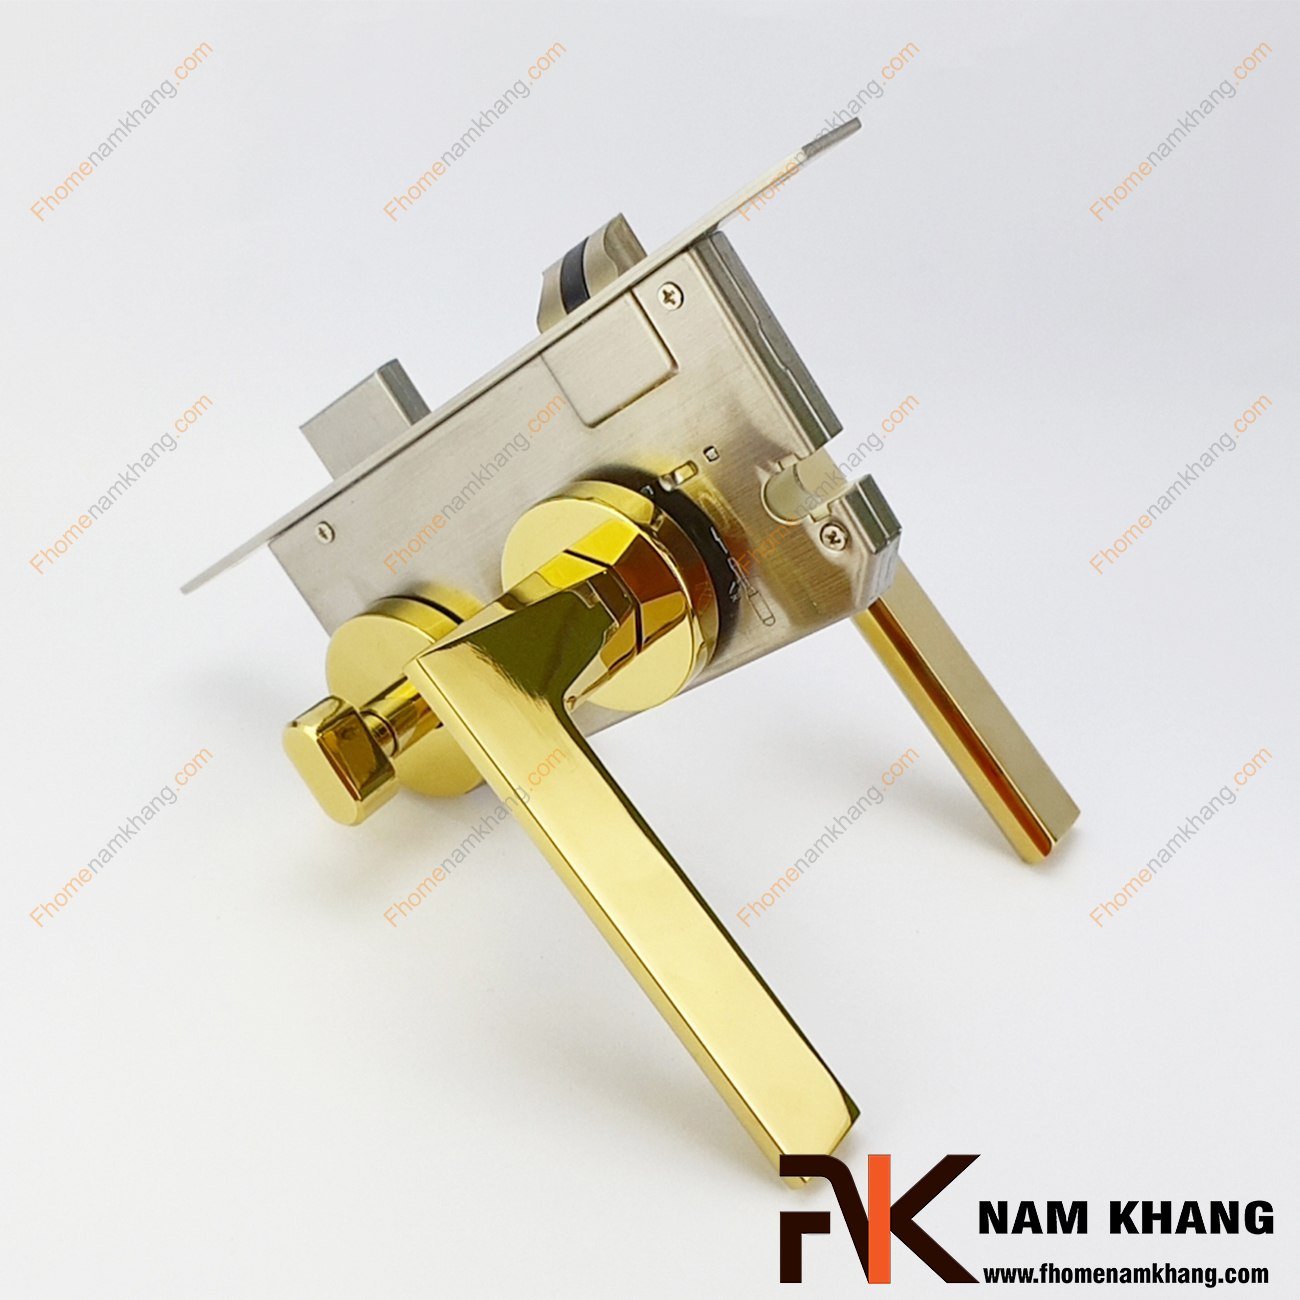 Khóa cửa phân thể hợp kim màu vàng bóng cho cửa phòng NK570-PVD có thiết kế khá nhỏ gọn, tay gạt và ốp khóa riêng biệt.